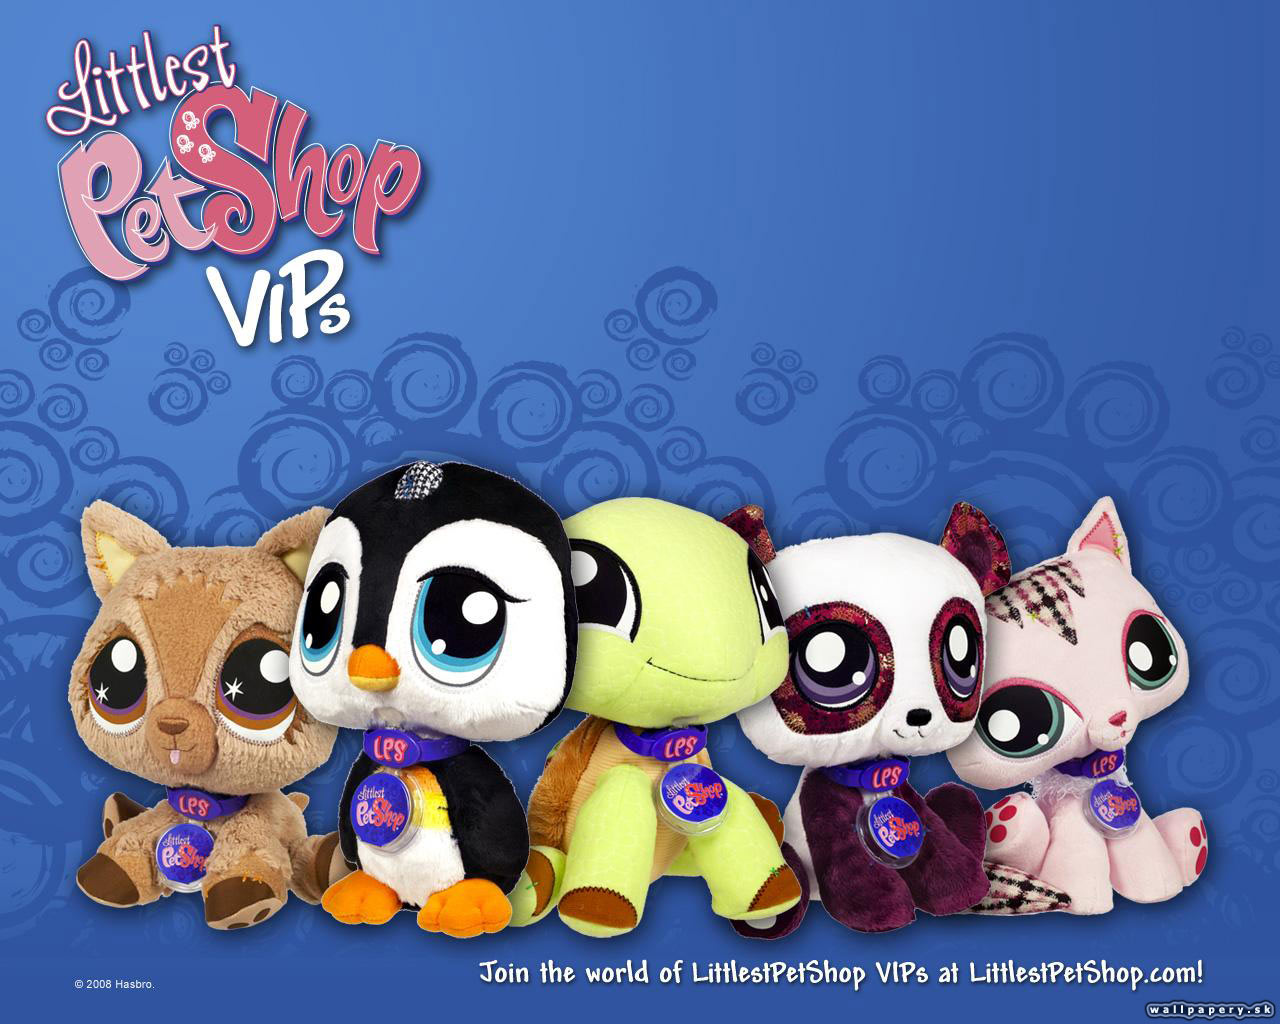 Pet shop domino. Little is Pet shop игра. My Littlest Pet shop игра. Littlest Pet shop 2010. Littlest Pet shop 2011.